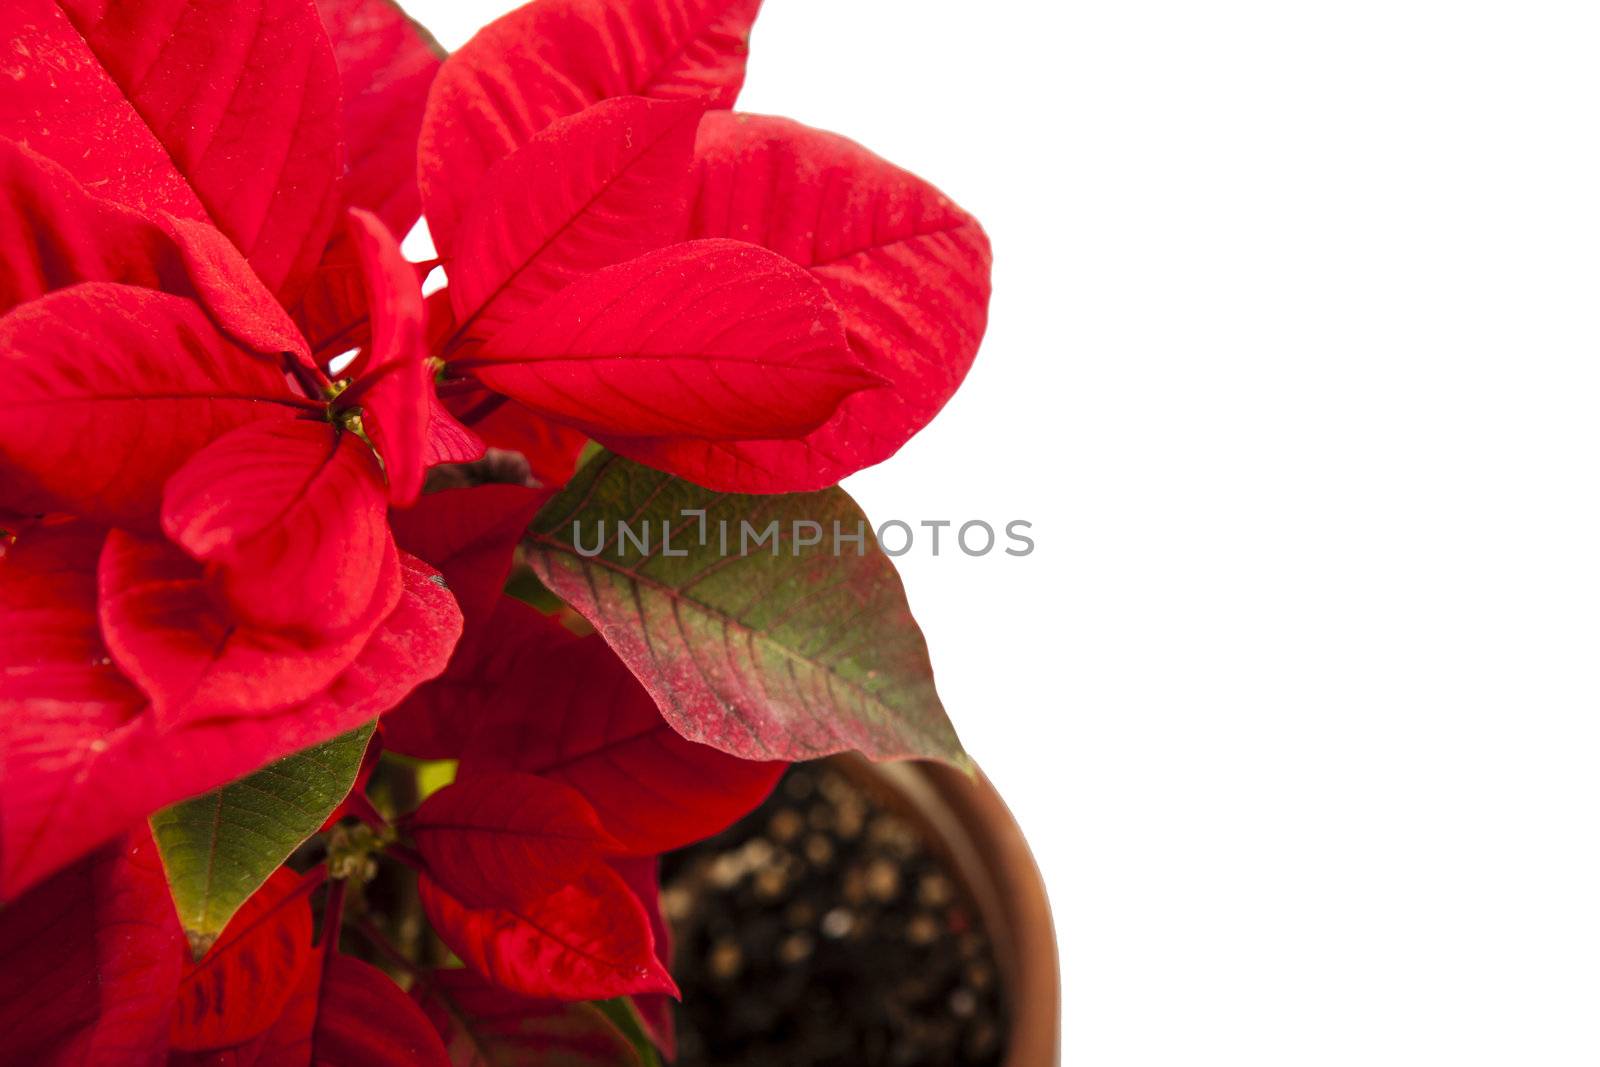 Ponsietta or Christmas Flower over white backdrop